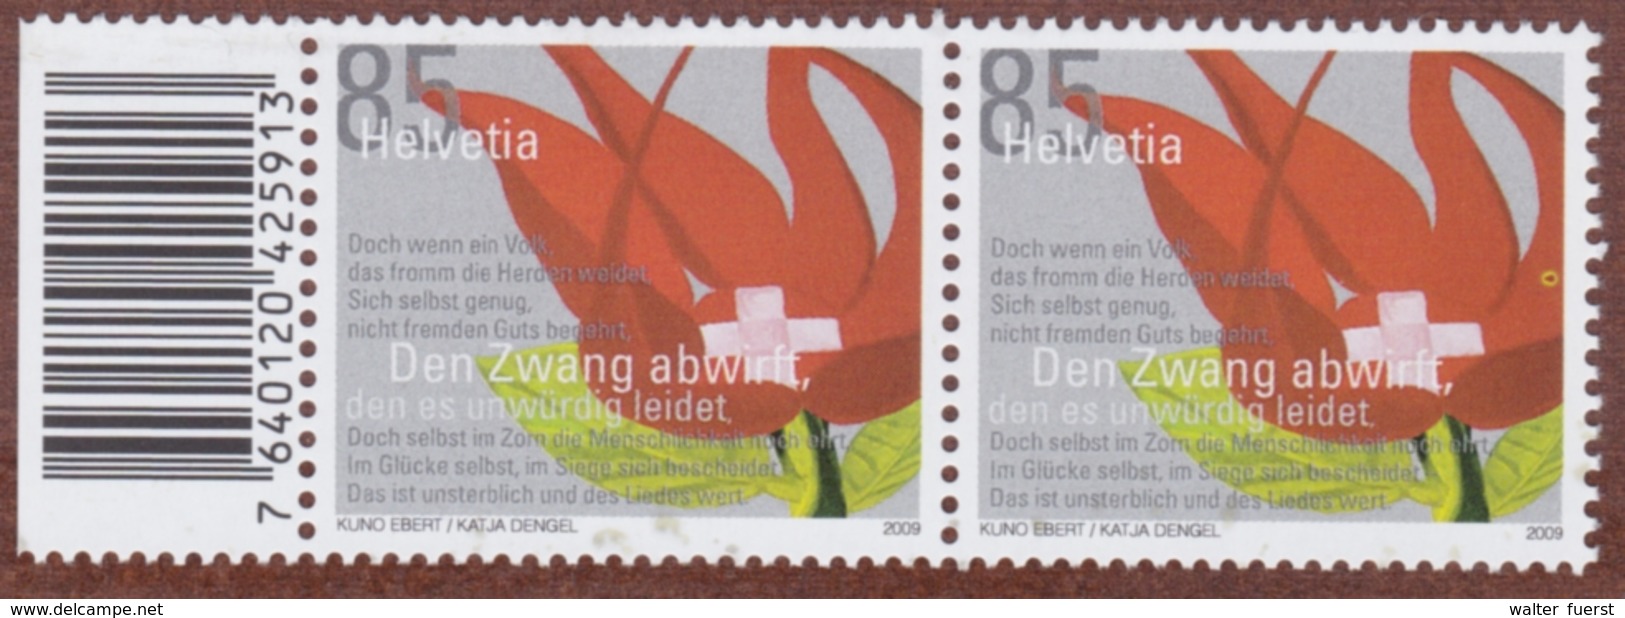 SCHWEIZ ABARTEN 2007: 85 (Rp) "Schweiz", Ab. 1 "gelber Putzer", Postfrisch - Abarten